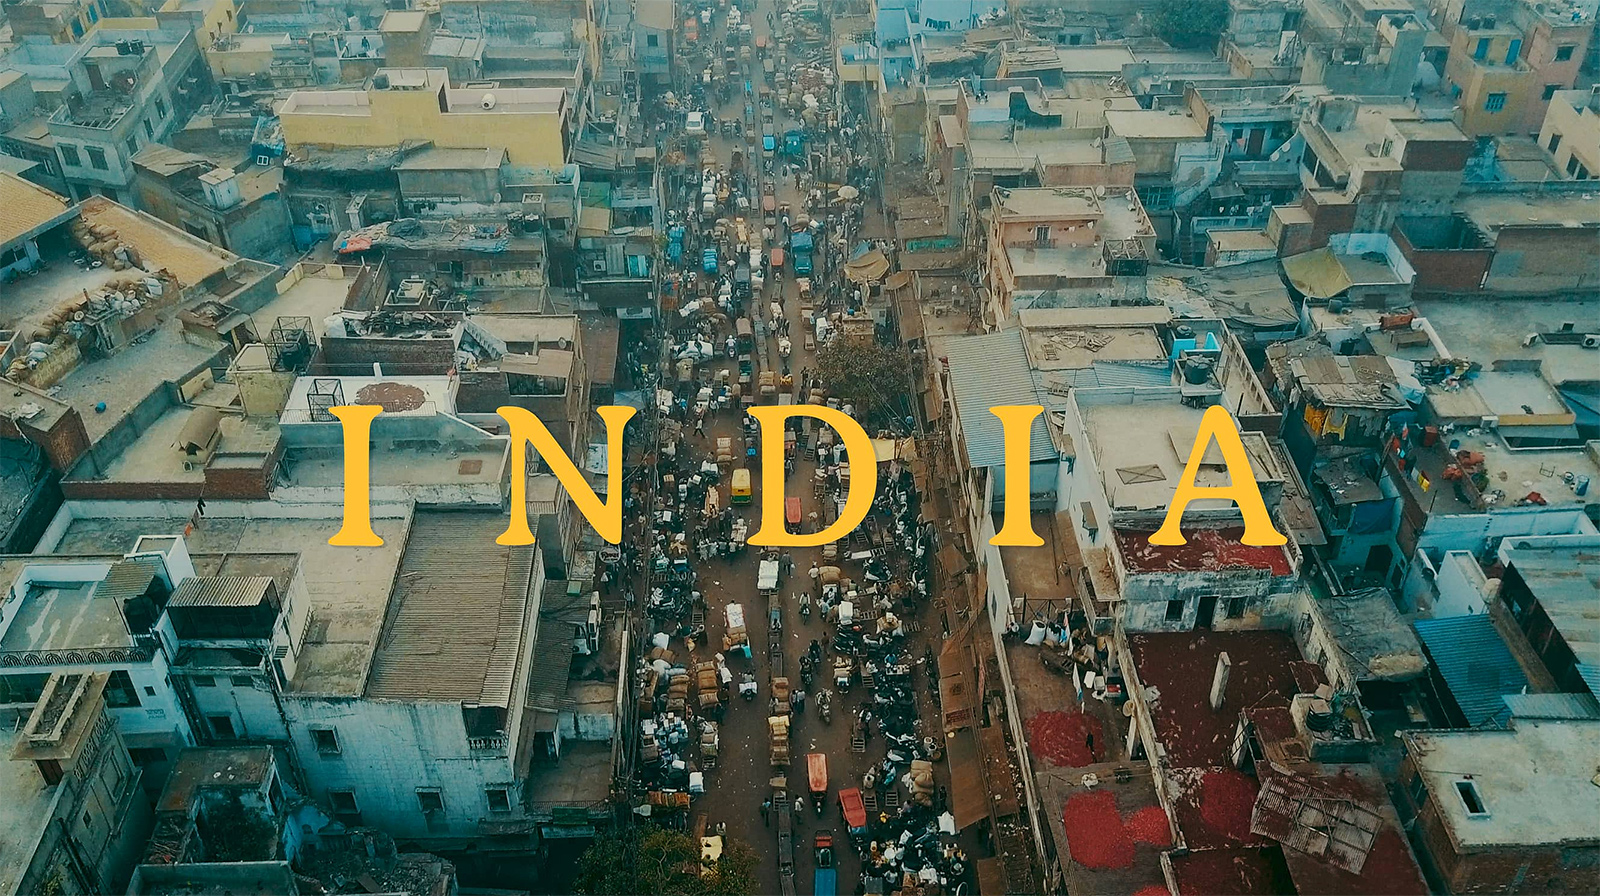 Tour of India | Short Film